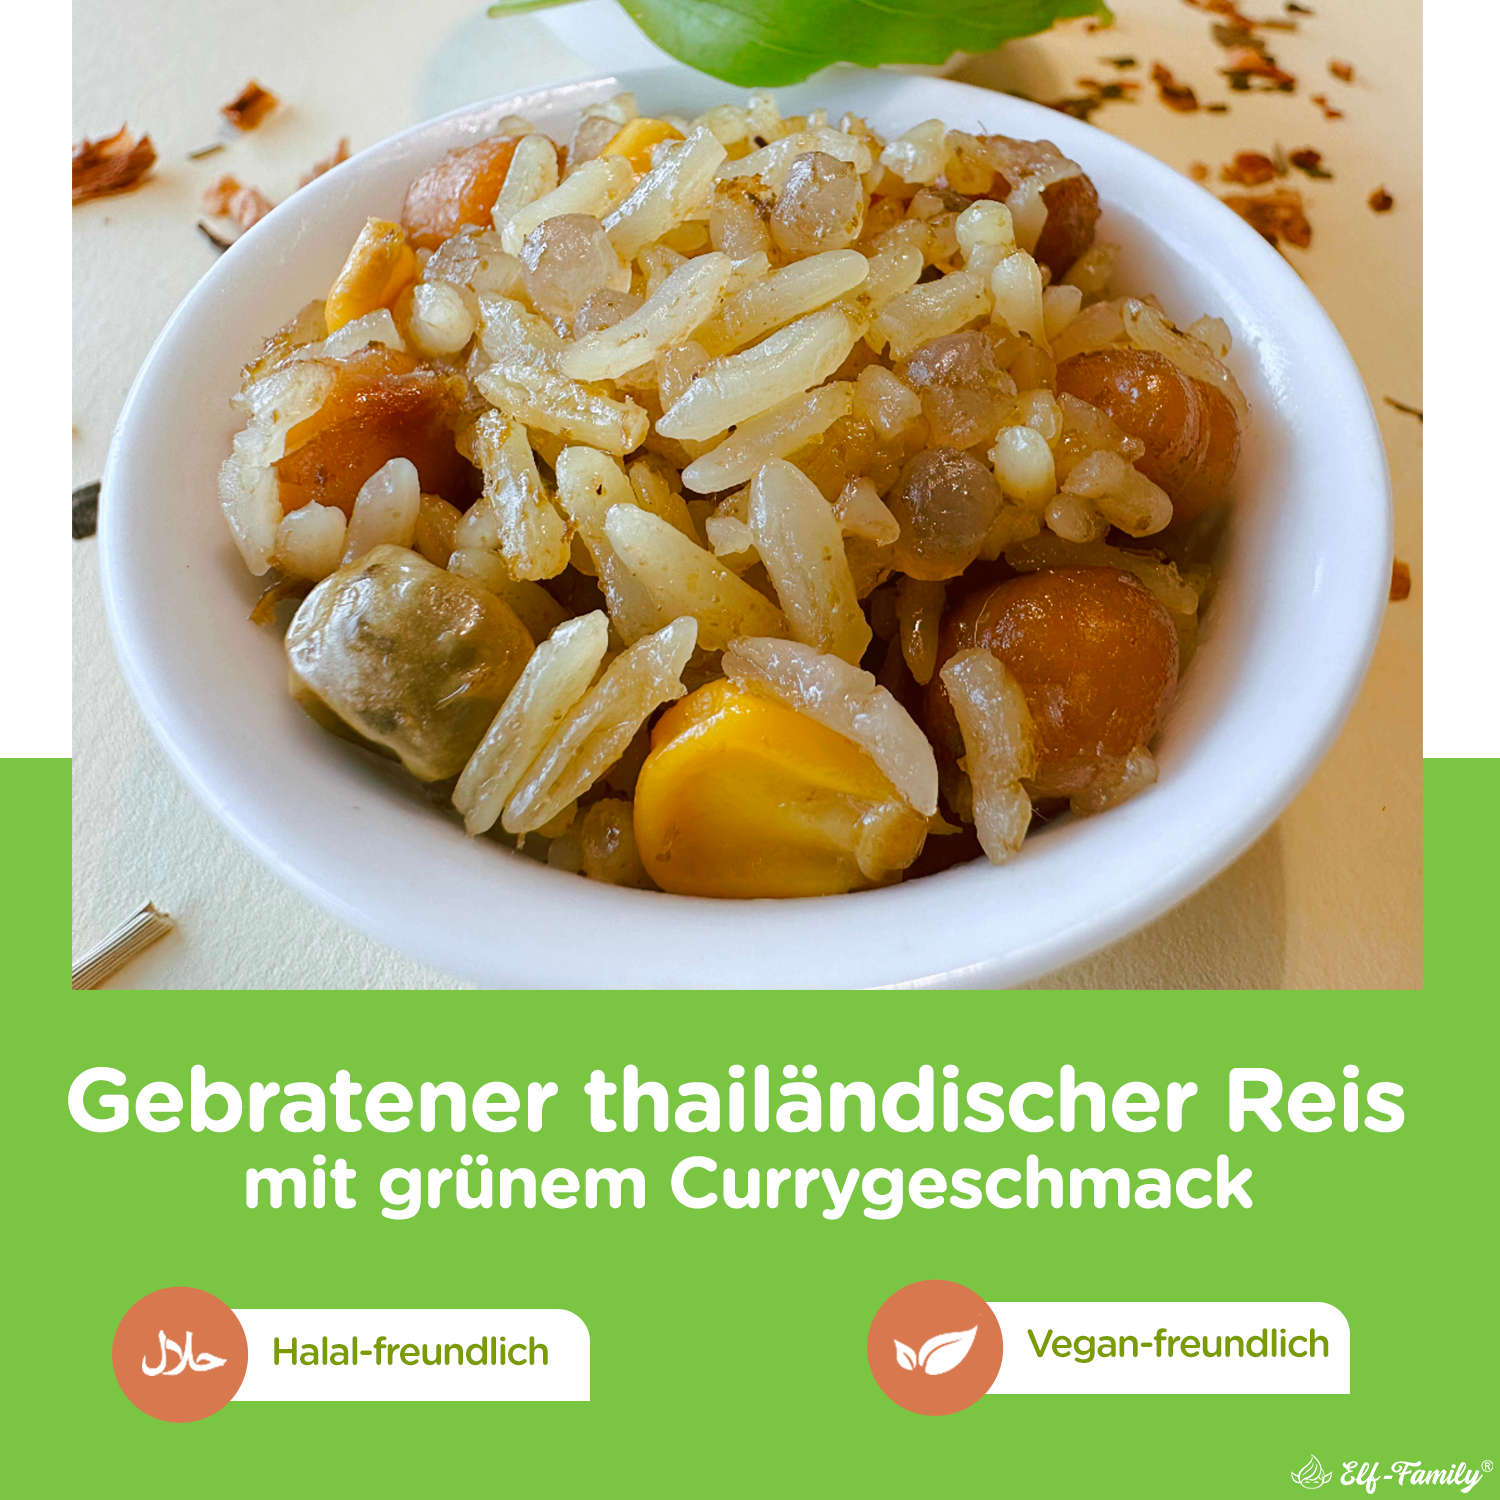 Elf-Family Diät Thai Gebratener Reis - Würziges grünes Curry aus Thailand - Fertiggerichte für Mikrowelle in 1 Min - 100% Natürlich Thai- Proteinreich/Kalorienarme/Vegane/Vorgekocht- 6er Box